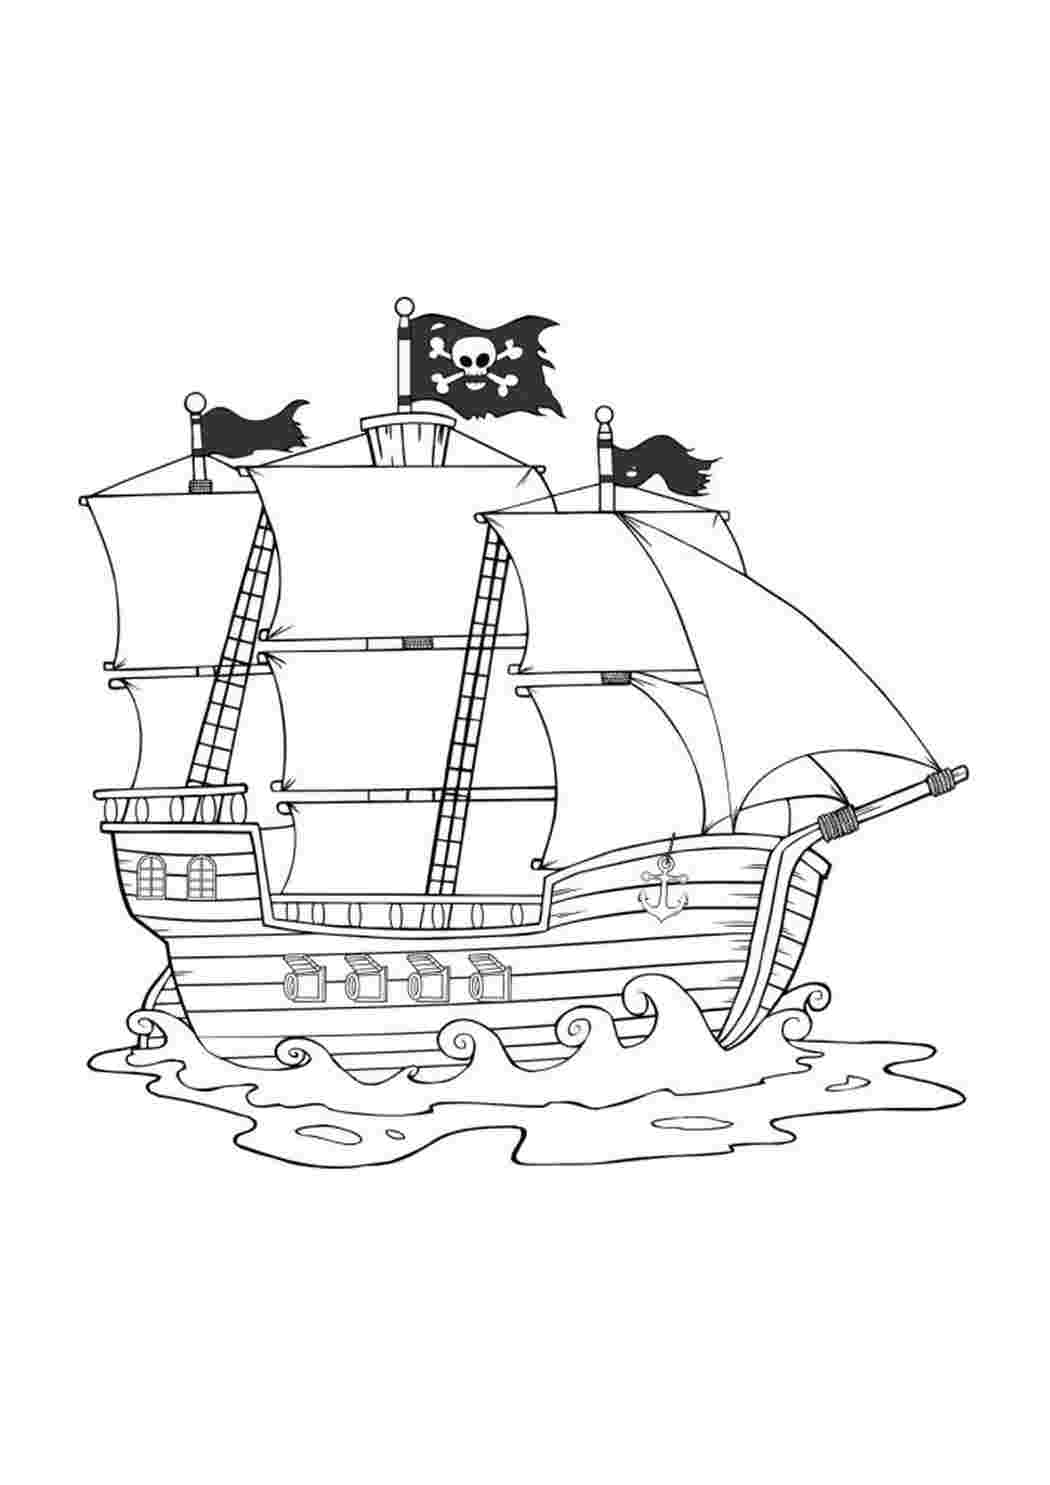 Пиратский корабль рисунок для детей карандашом поэтапно легко